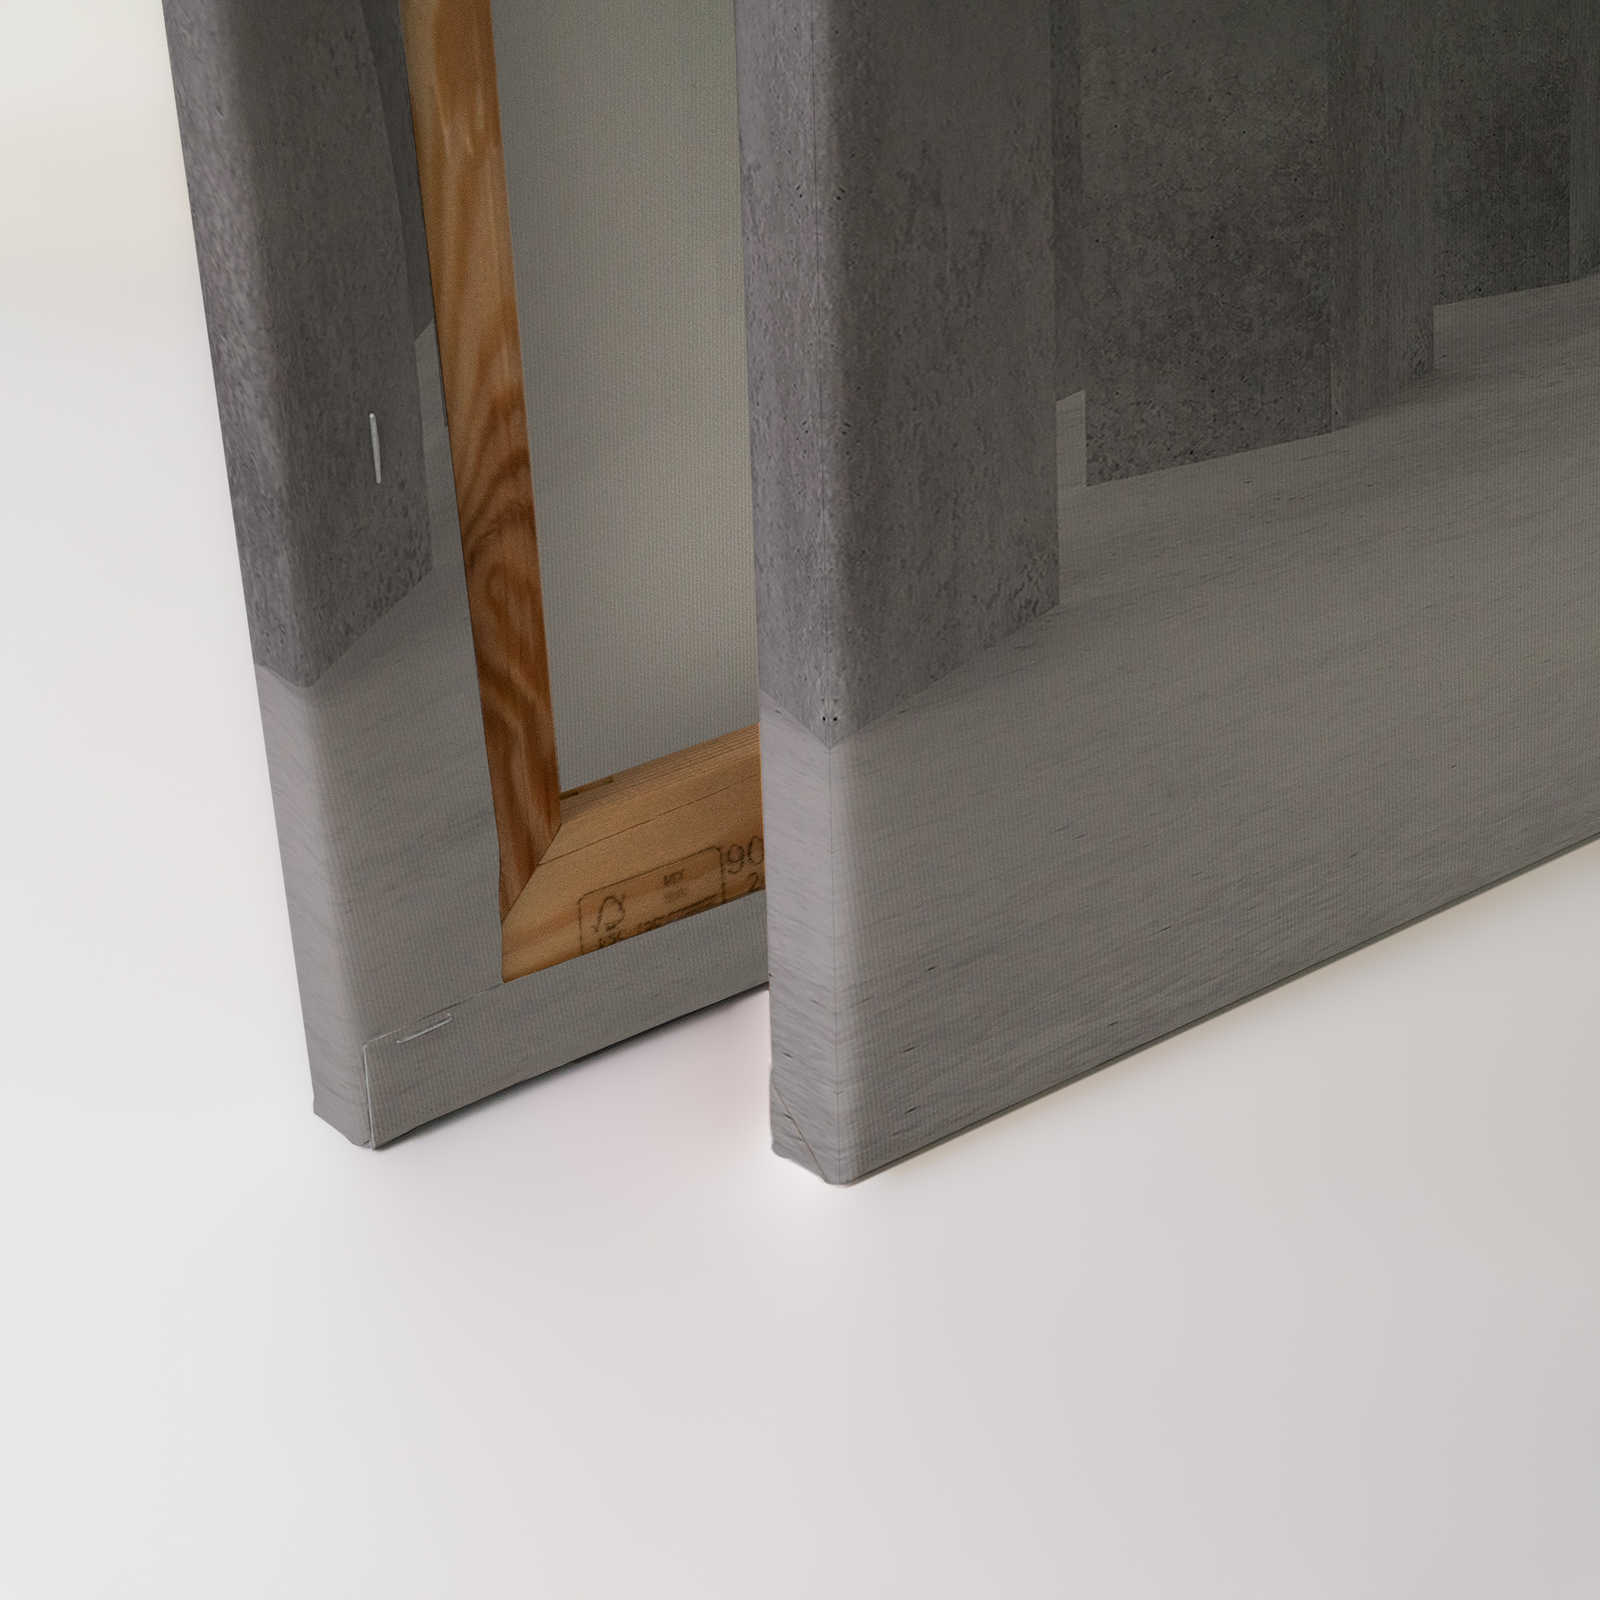             Tableau toile avec un espace 3D béton | gris - 0,90 m x 0,60 m
        